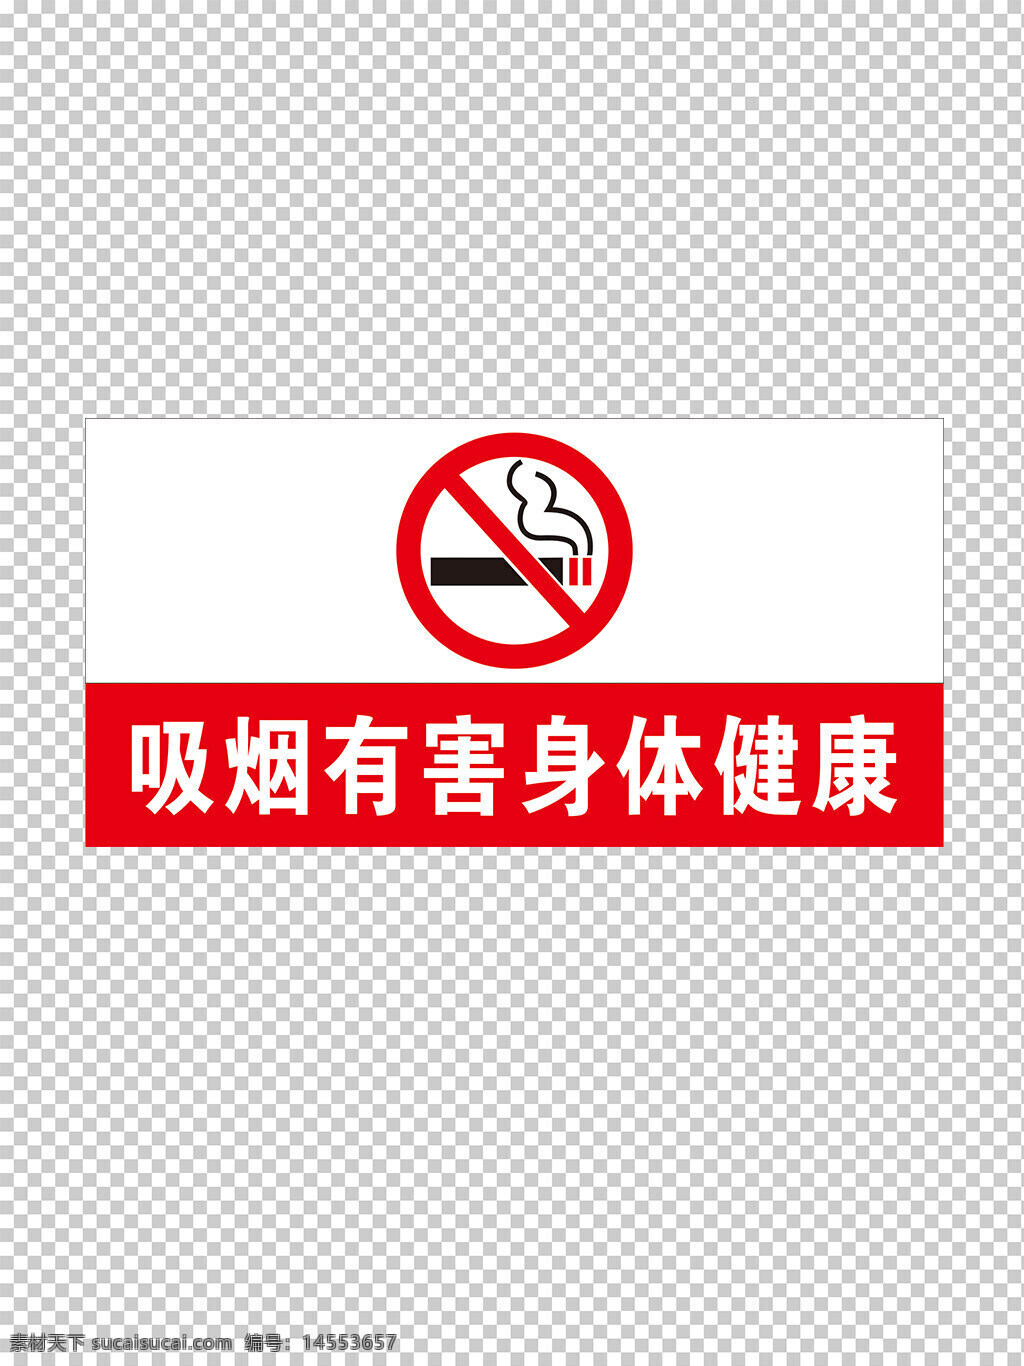 禁止吸烟 吸烟有害健康 禁止吸烟标识 禁烟 吸烟标识